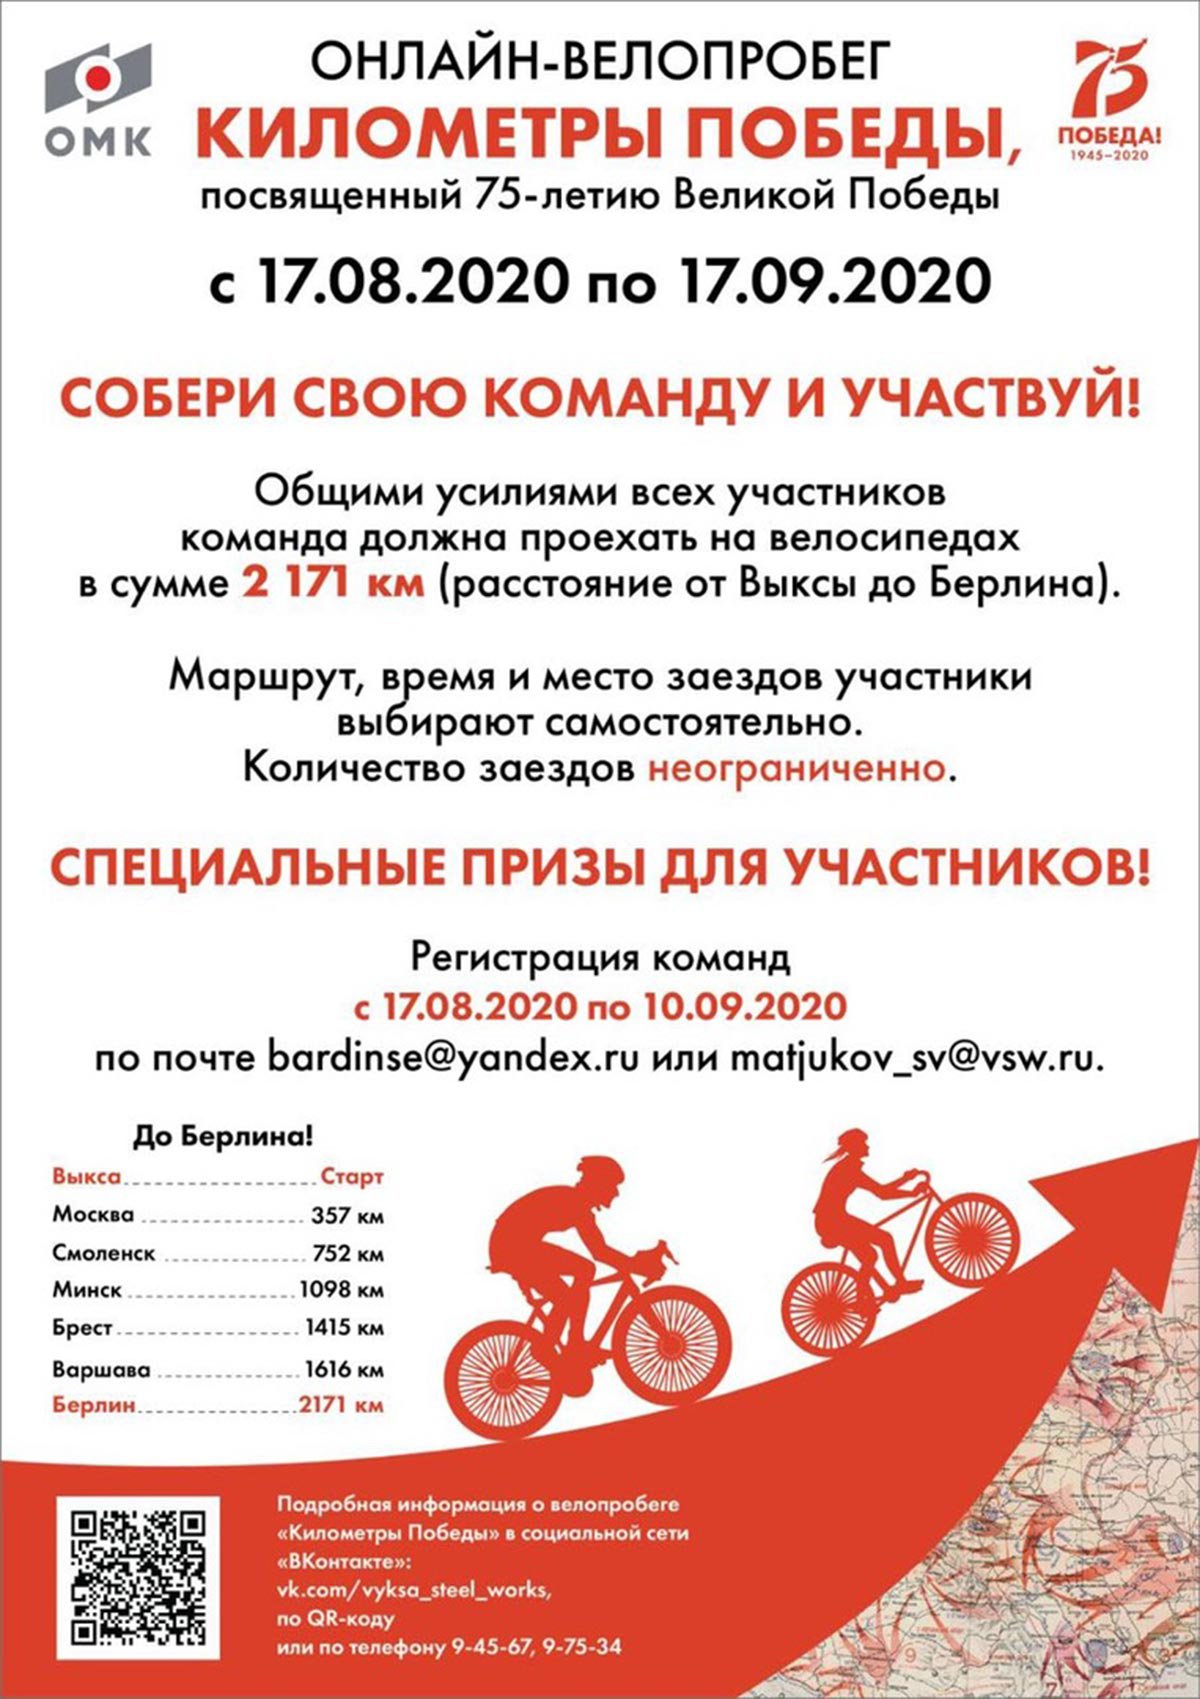 В округе проходит онлайн-велопробег «Километры Победы»